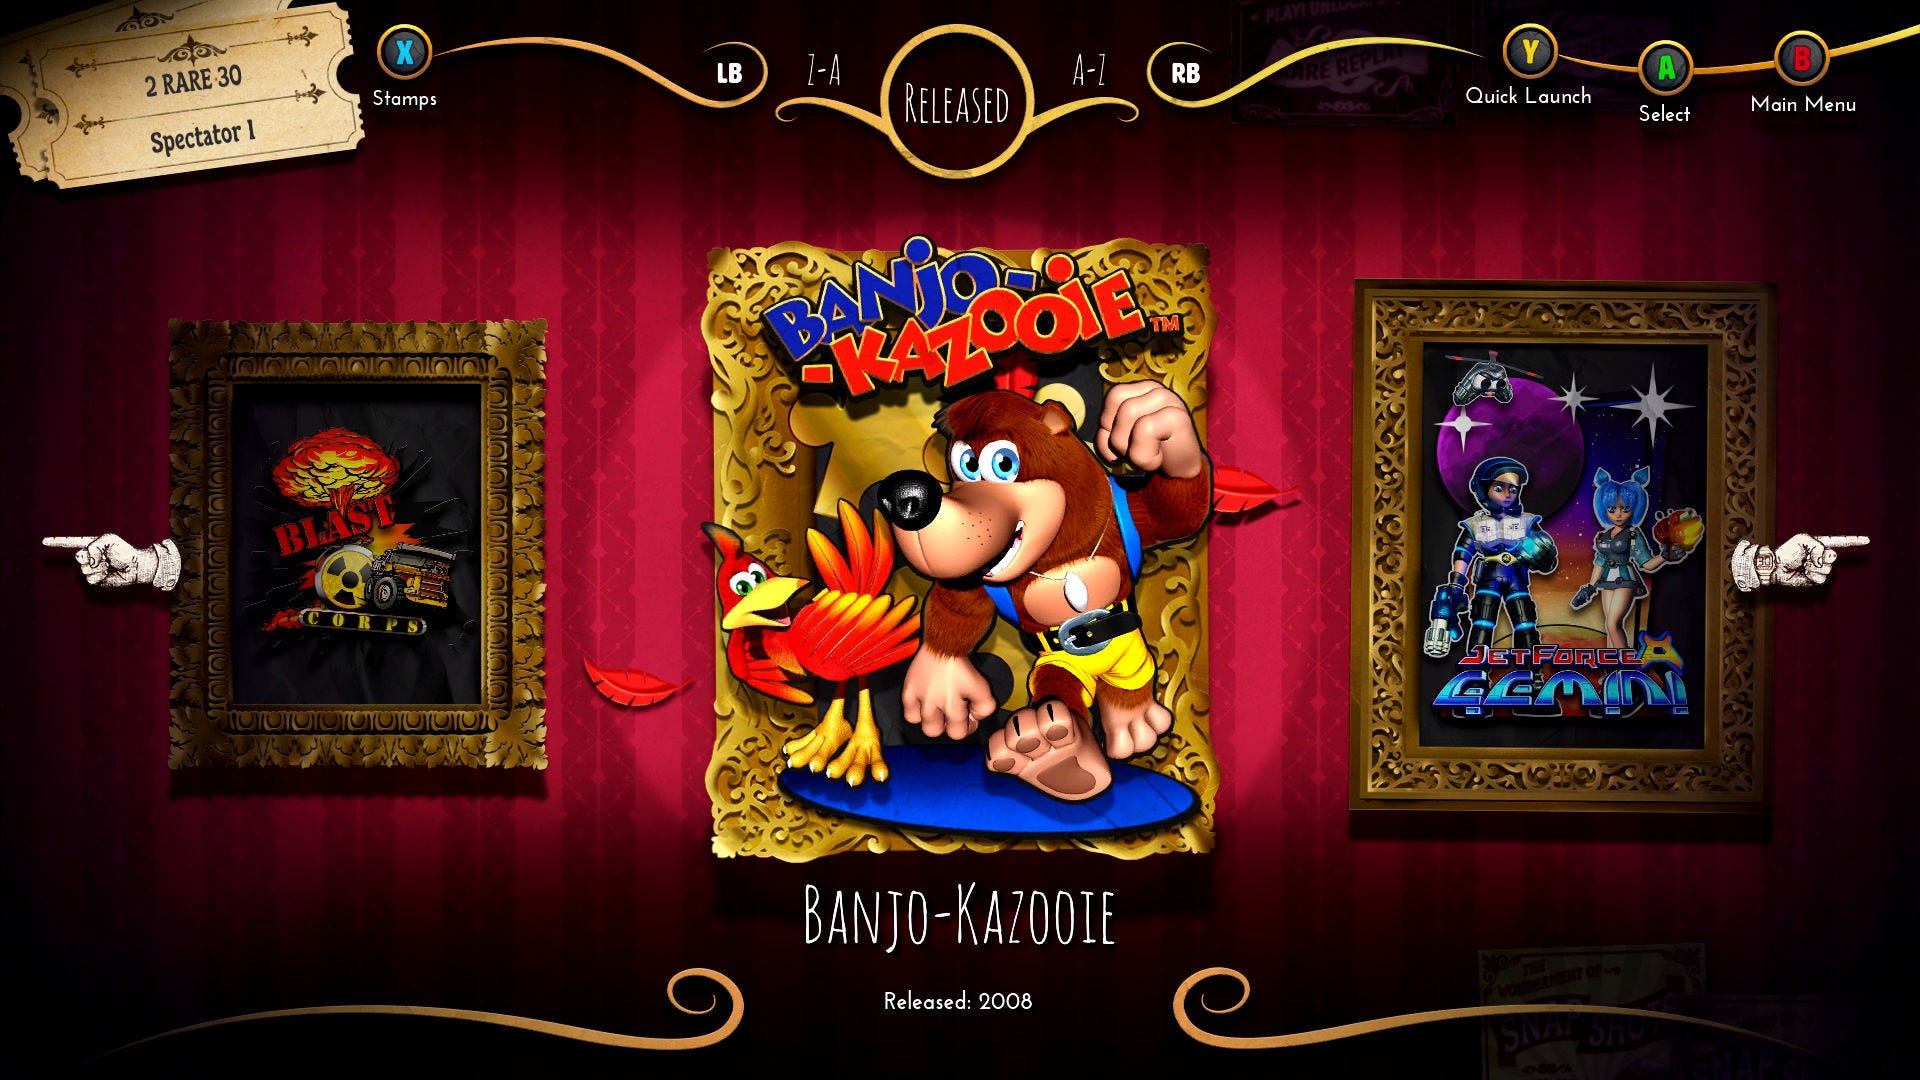 Banjo-Kazooie é um dos clássicos que o Xbox pode apresentar amanhã